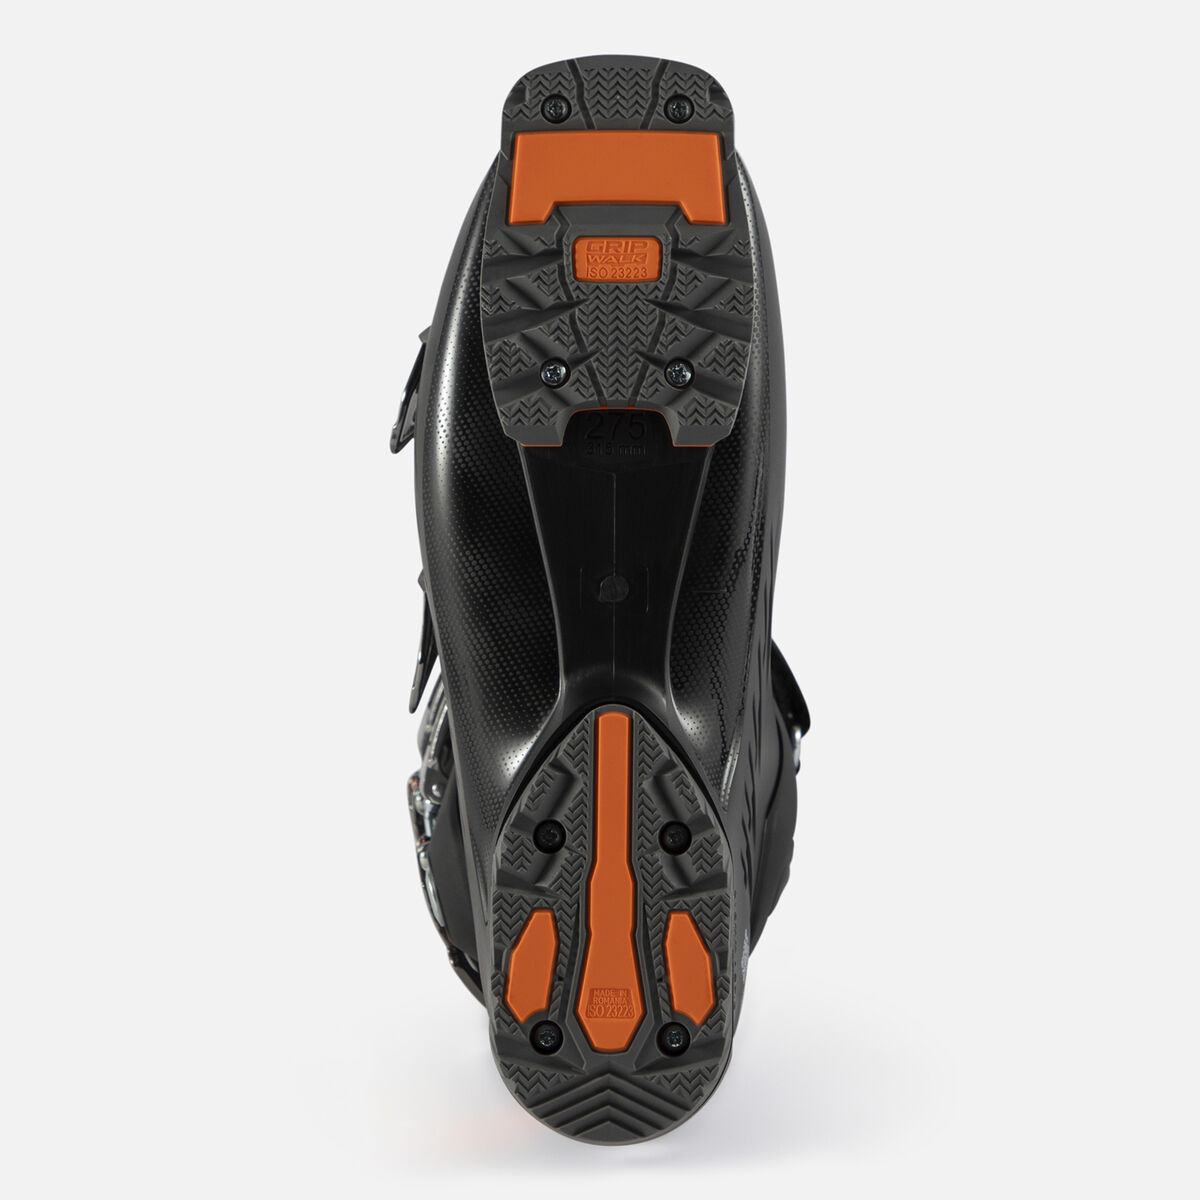 Chaussures de ski de Piste homme HI-Speed Pro 110 MV GW